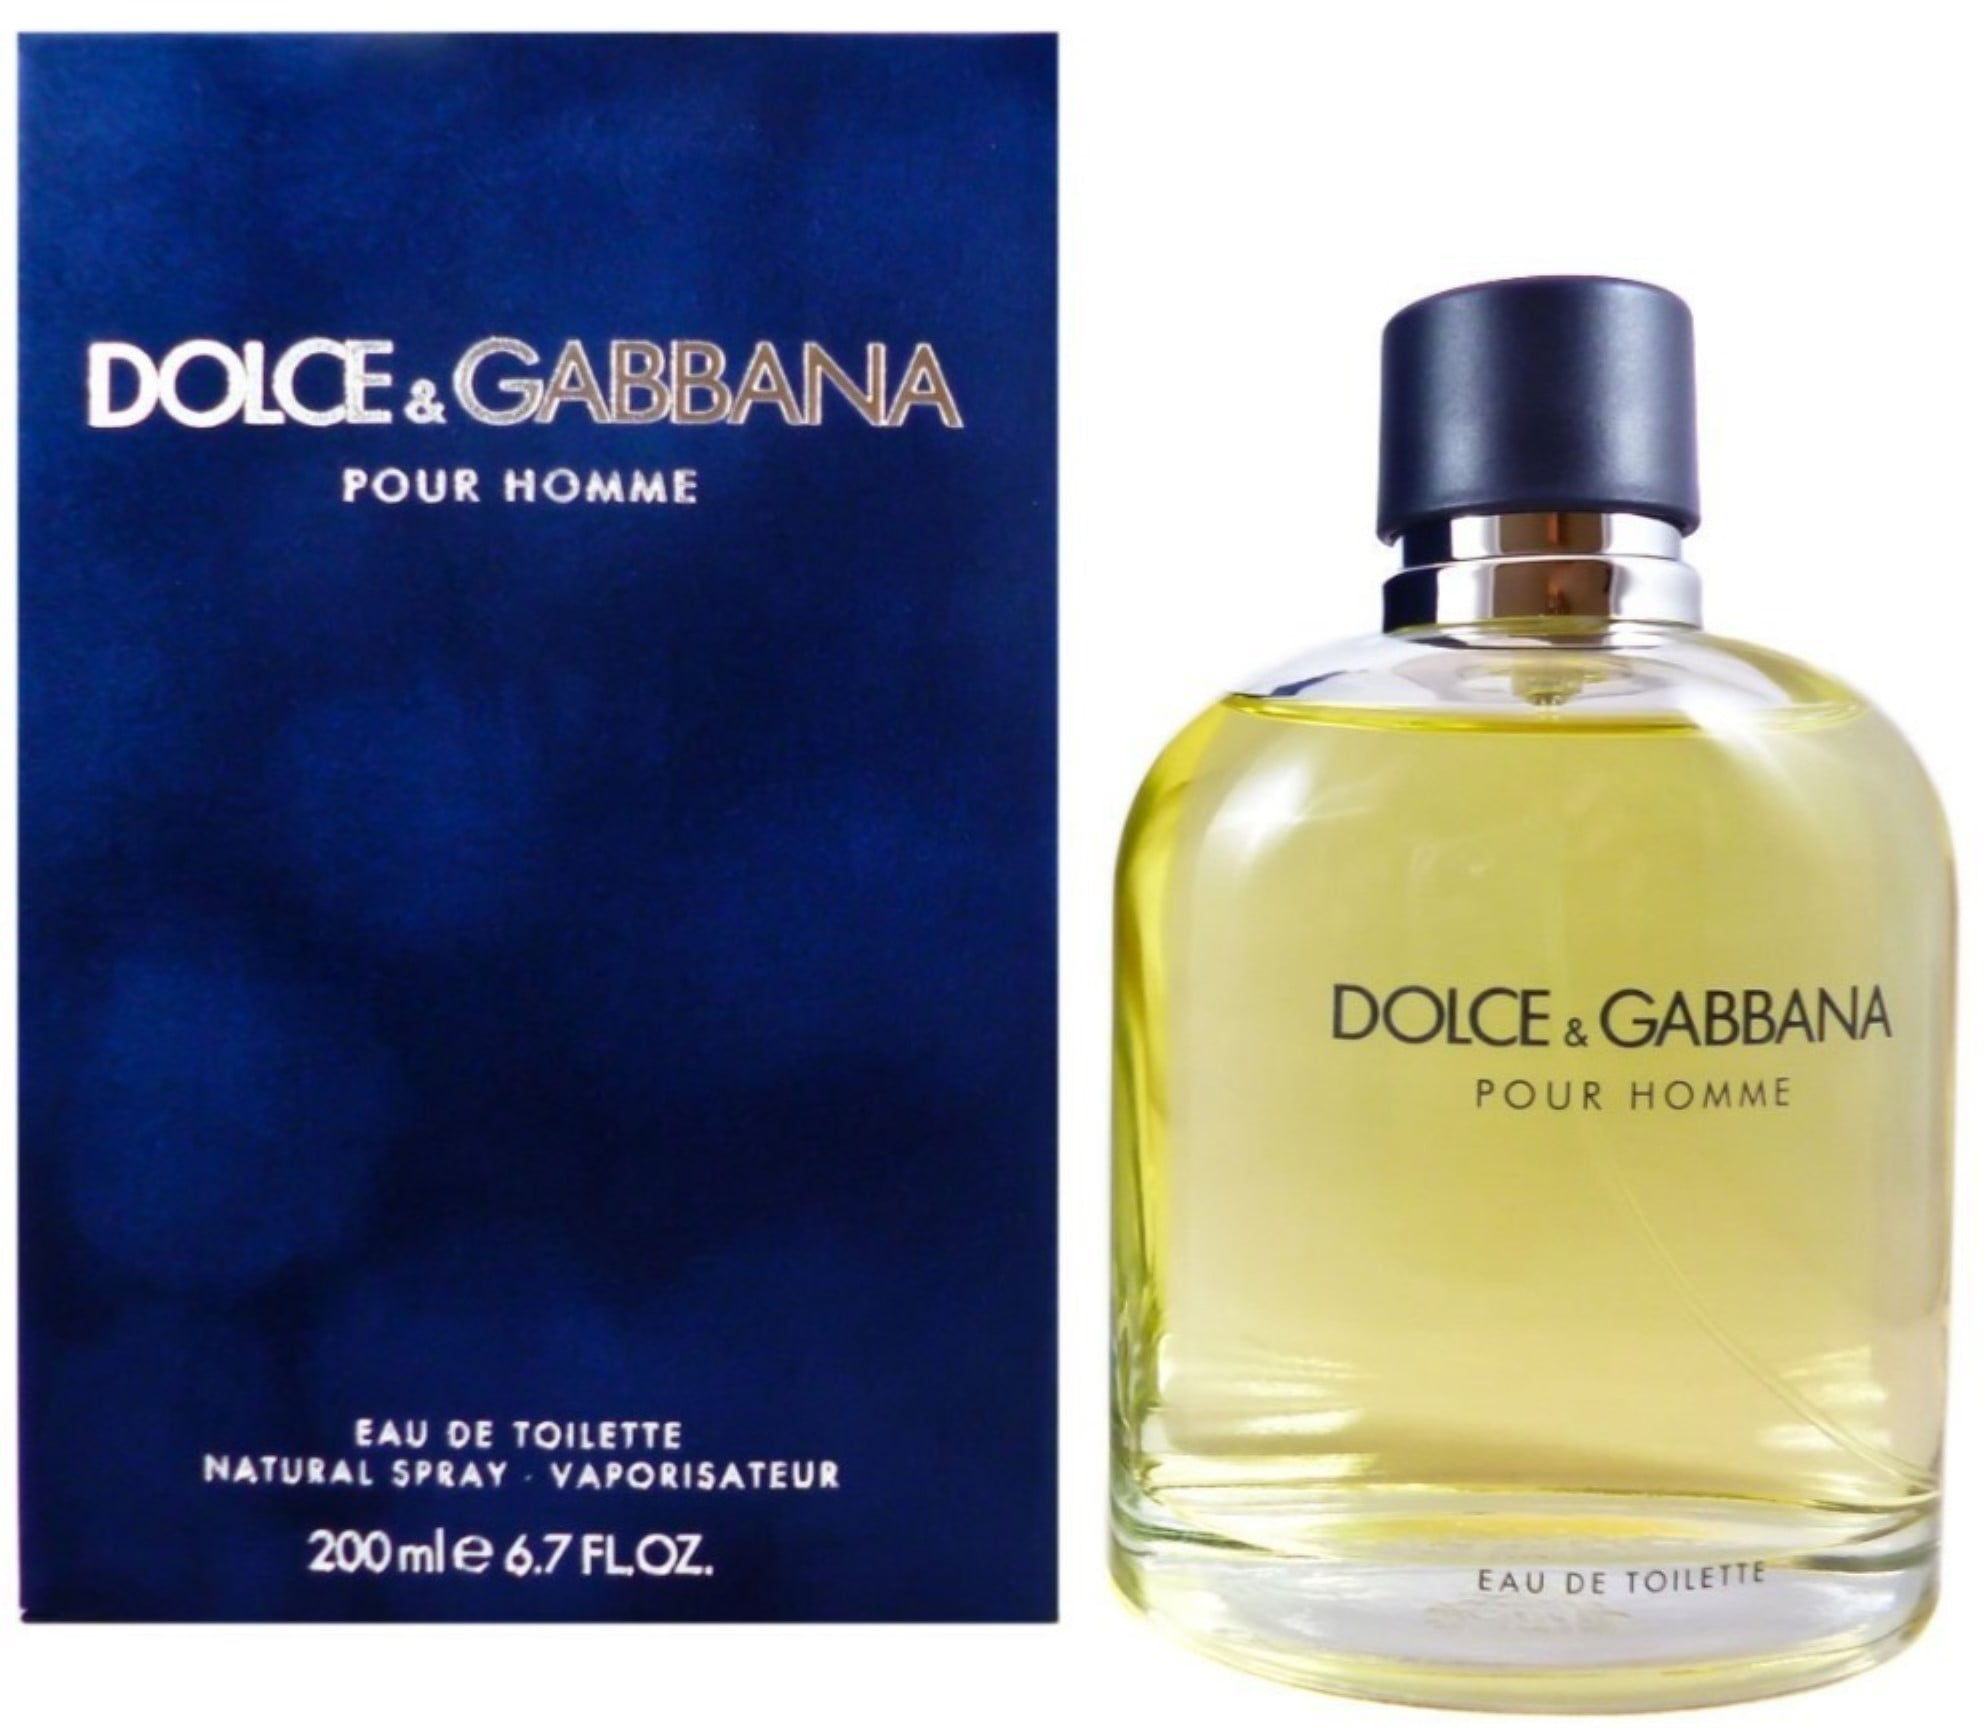 Дольче габбана пур хом. Dolce Gabbana pour homme 2. Dolce Gabbana Eau de Toilette. Dolce Gabbana pour homme. Туалетная вода Дольче Габбана мужские 6.